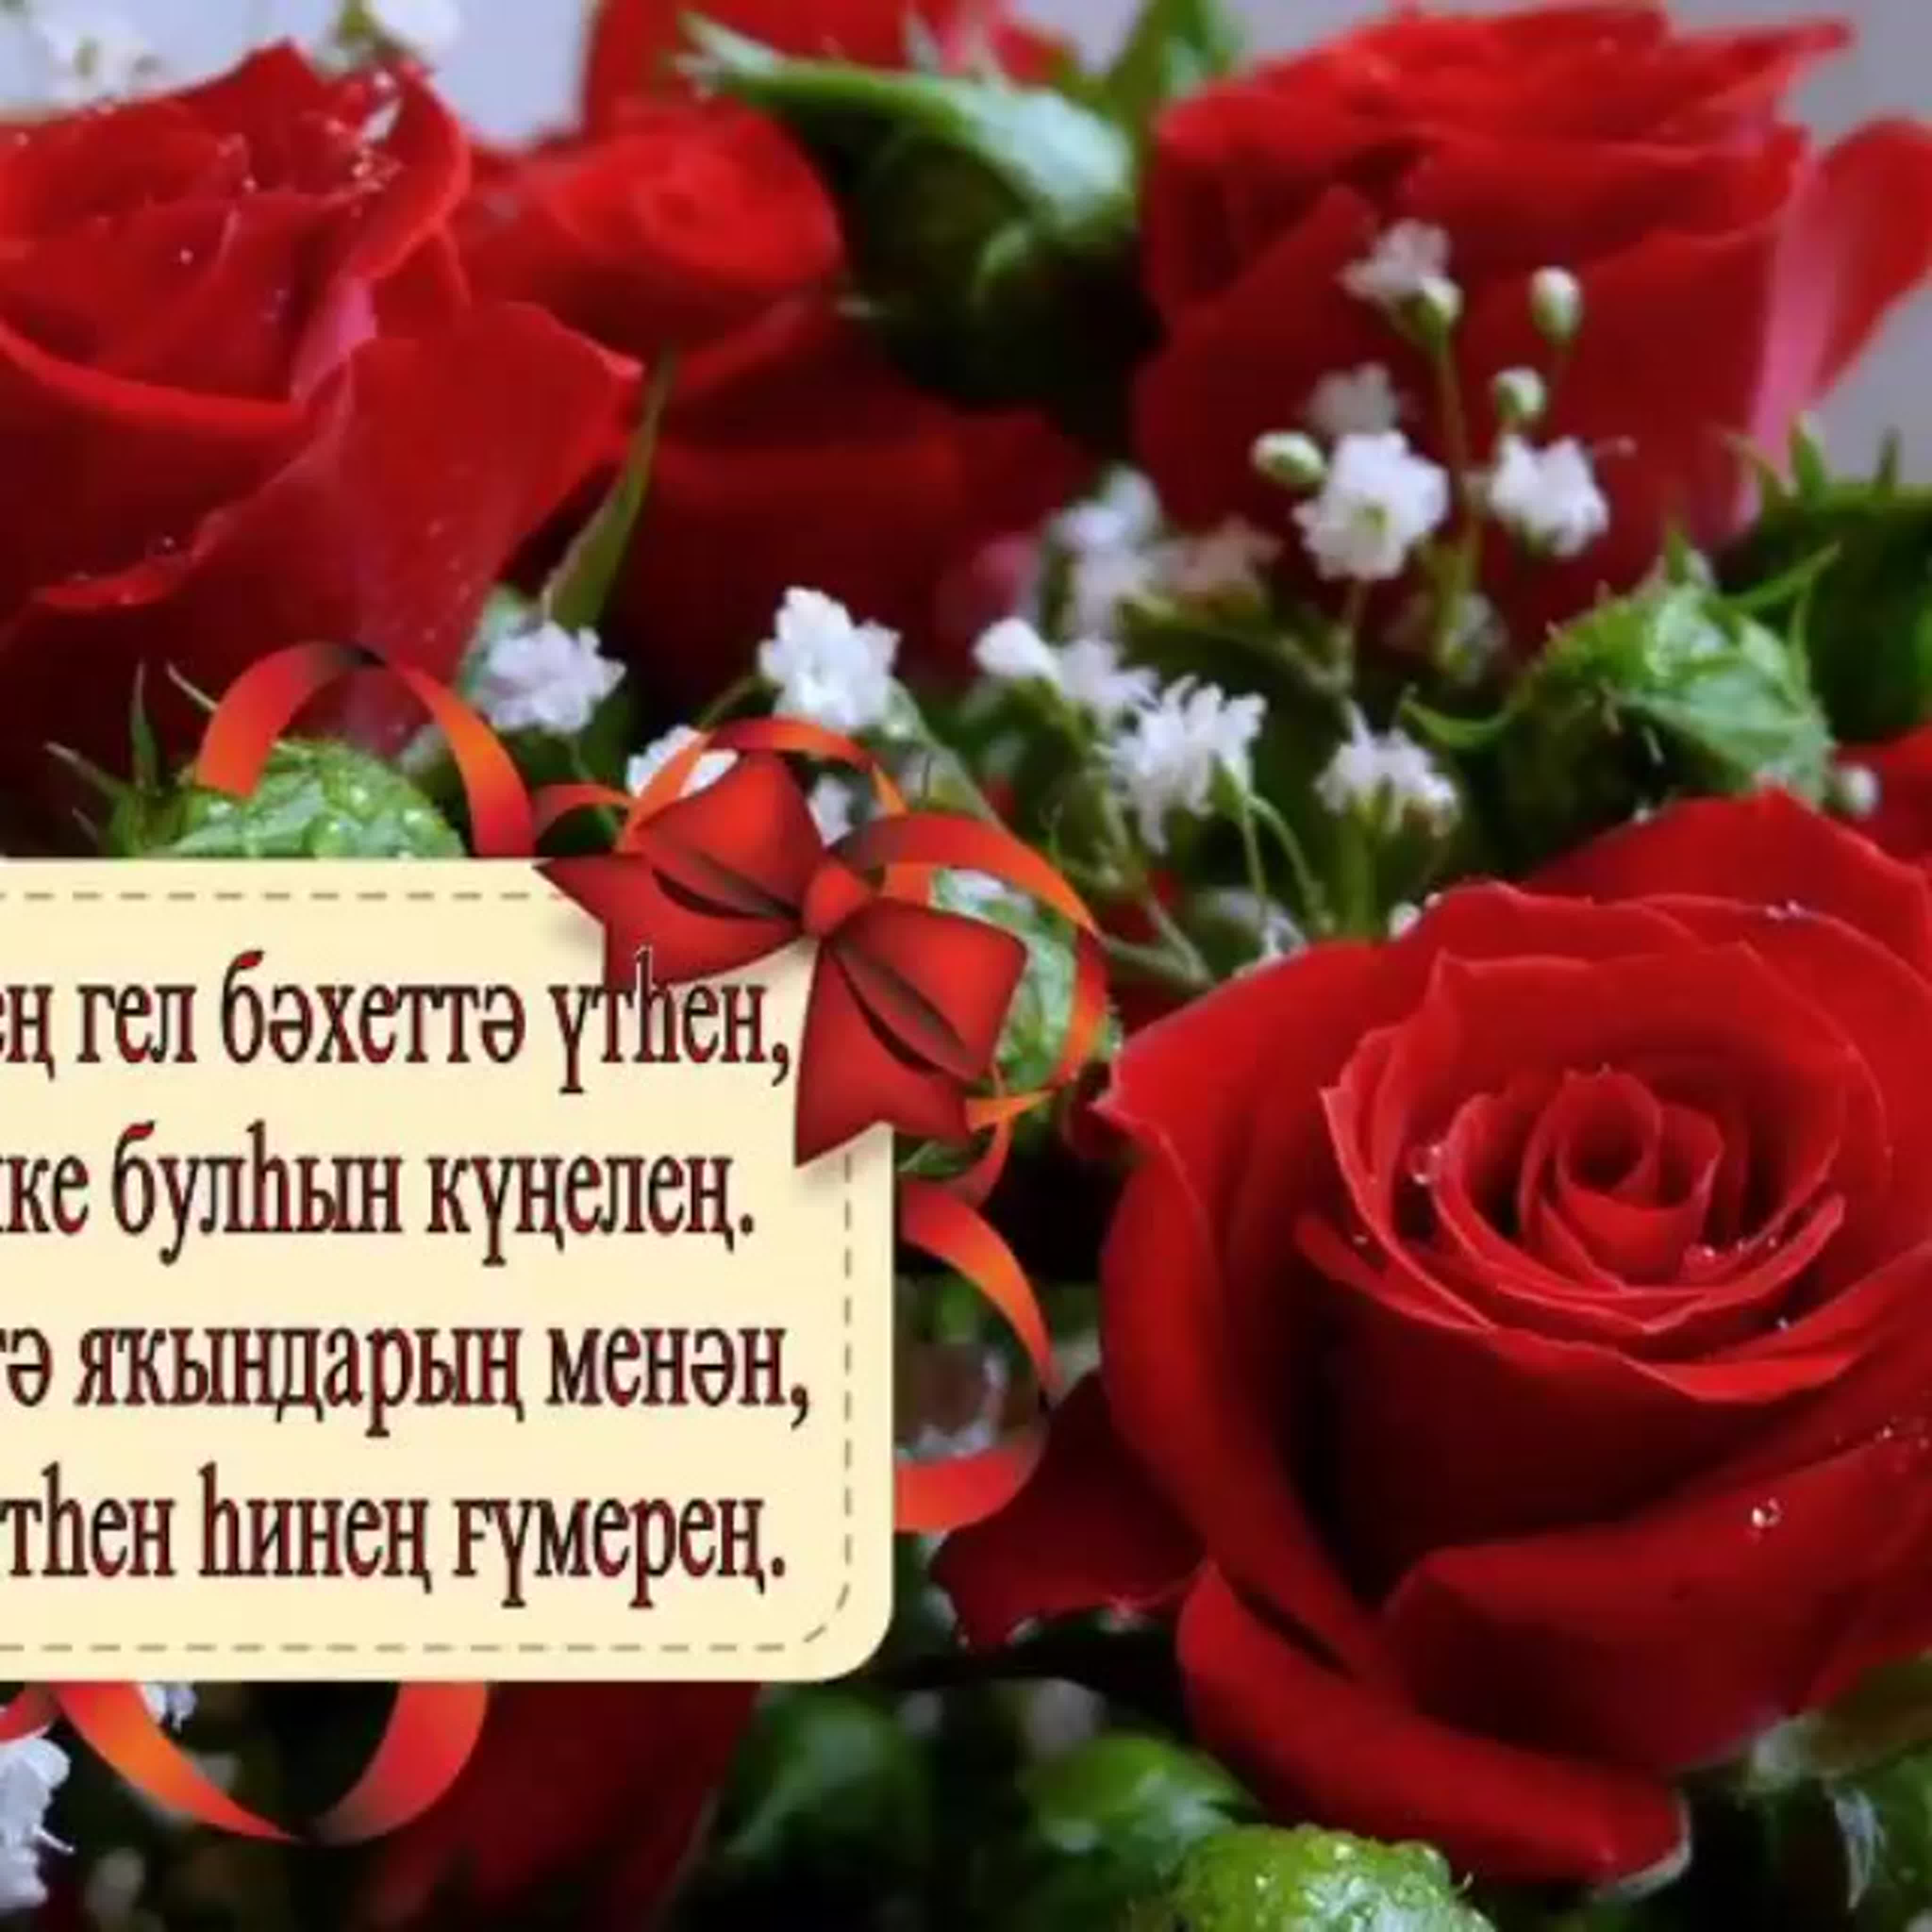 С днем рождения маме на башкирском. Поздравления с днём рождения на башкирском языке. Поздравление с юбилеем на башкирском языке. Пожелания с днём рождения на башкирском языке. Открытки с днём рождения на башкирском языке.